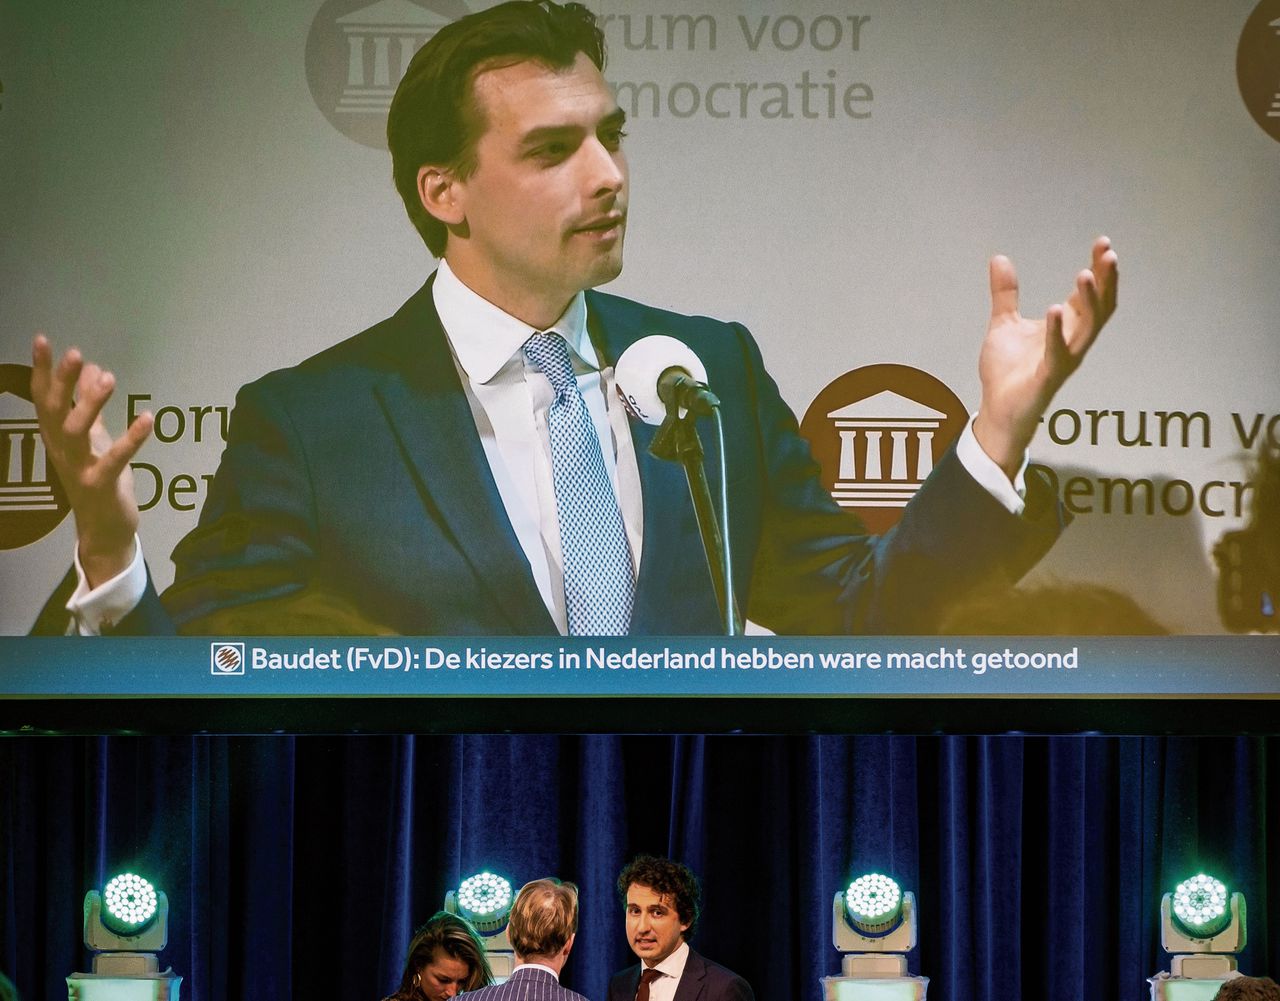 De overwinningsspeech van Thierry Baudet (Forum voor Democratie) wordt live uitgezonden op de uitslagenavond van GroenLinks in Utrecht.